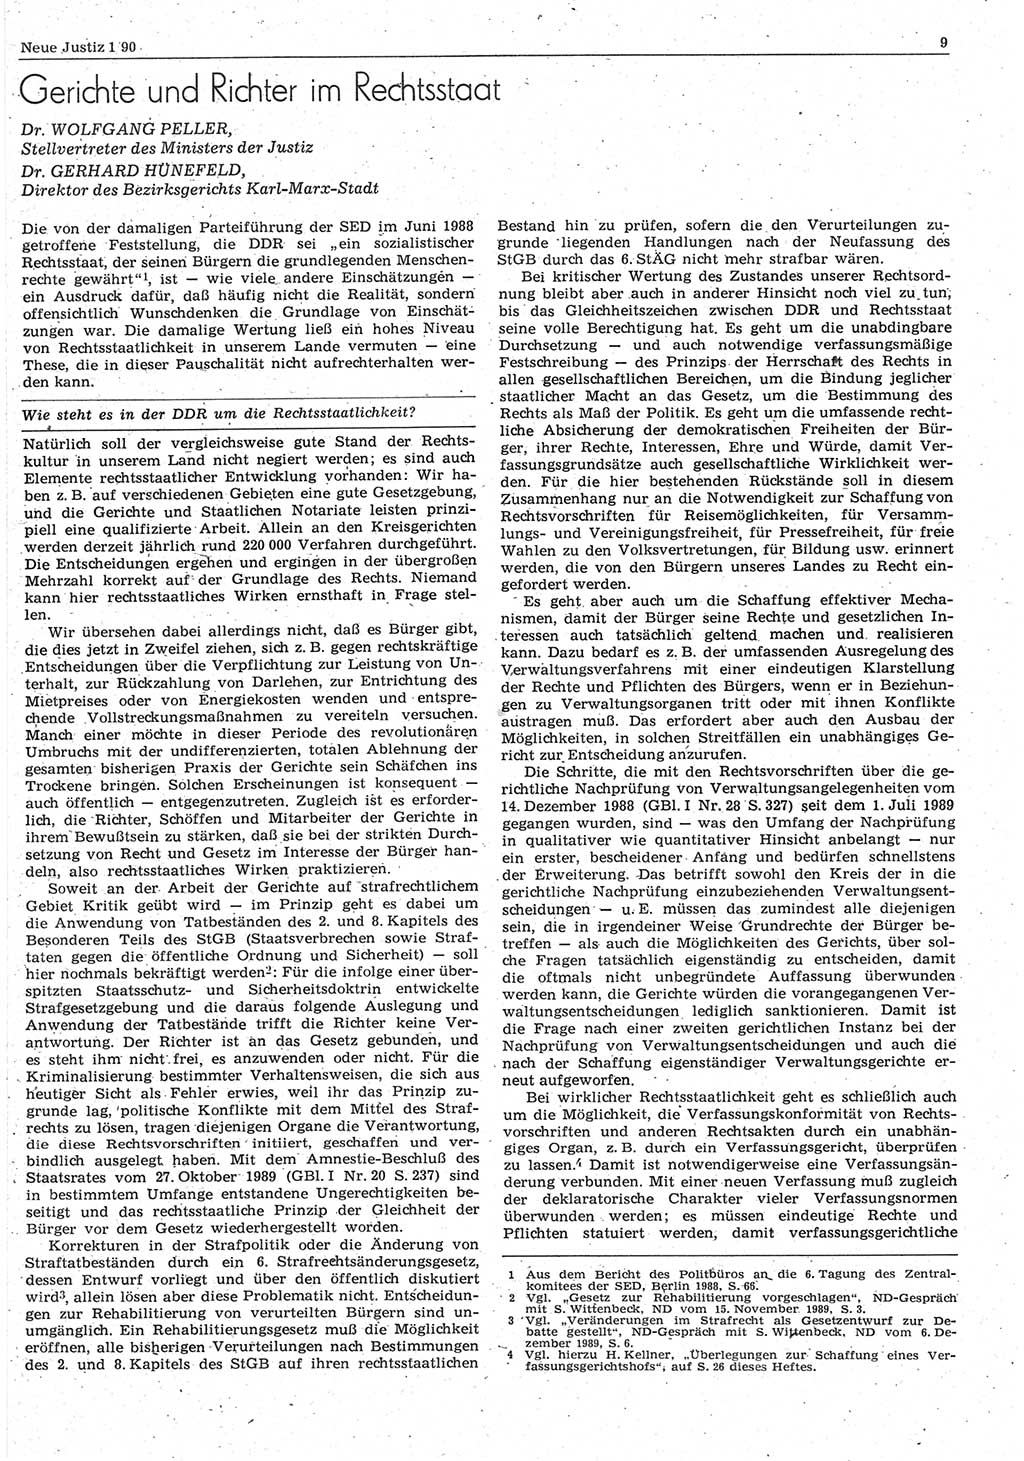 Neue Justiz (NJ), Zeitschrift für Rechtsetzung und Rechtsanwendung [Deutsche Demokratische Republik (DDR)], 44. Jahrgang 1990, Seite 9 (NJ DDR 1990, S. 9)